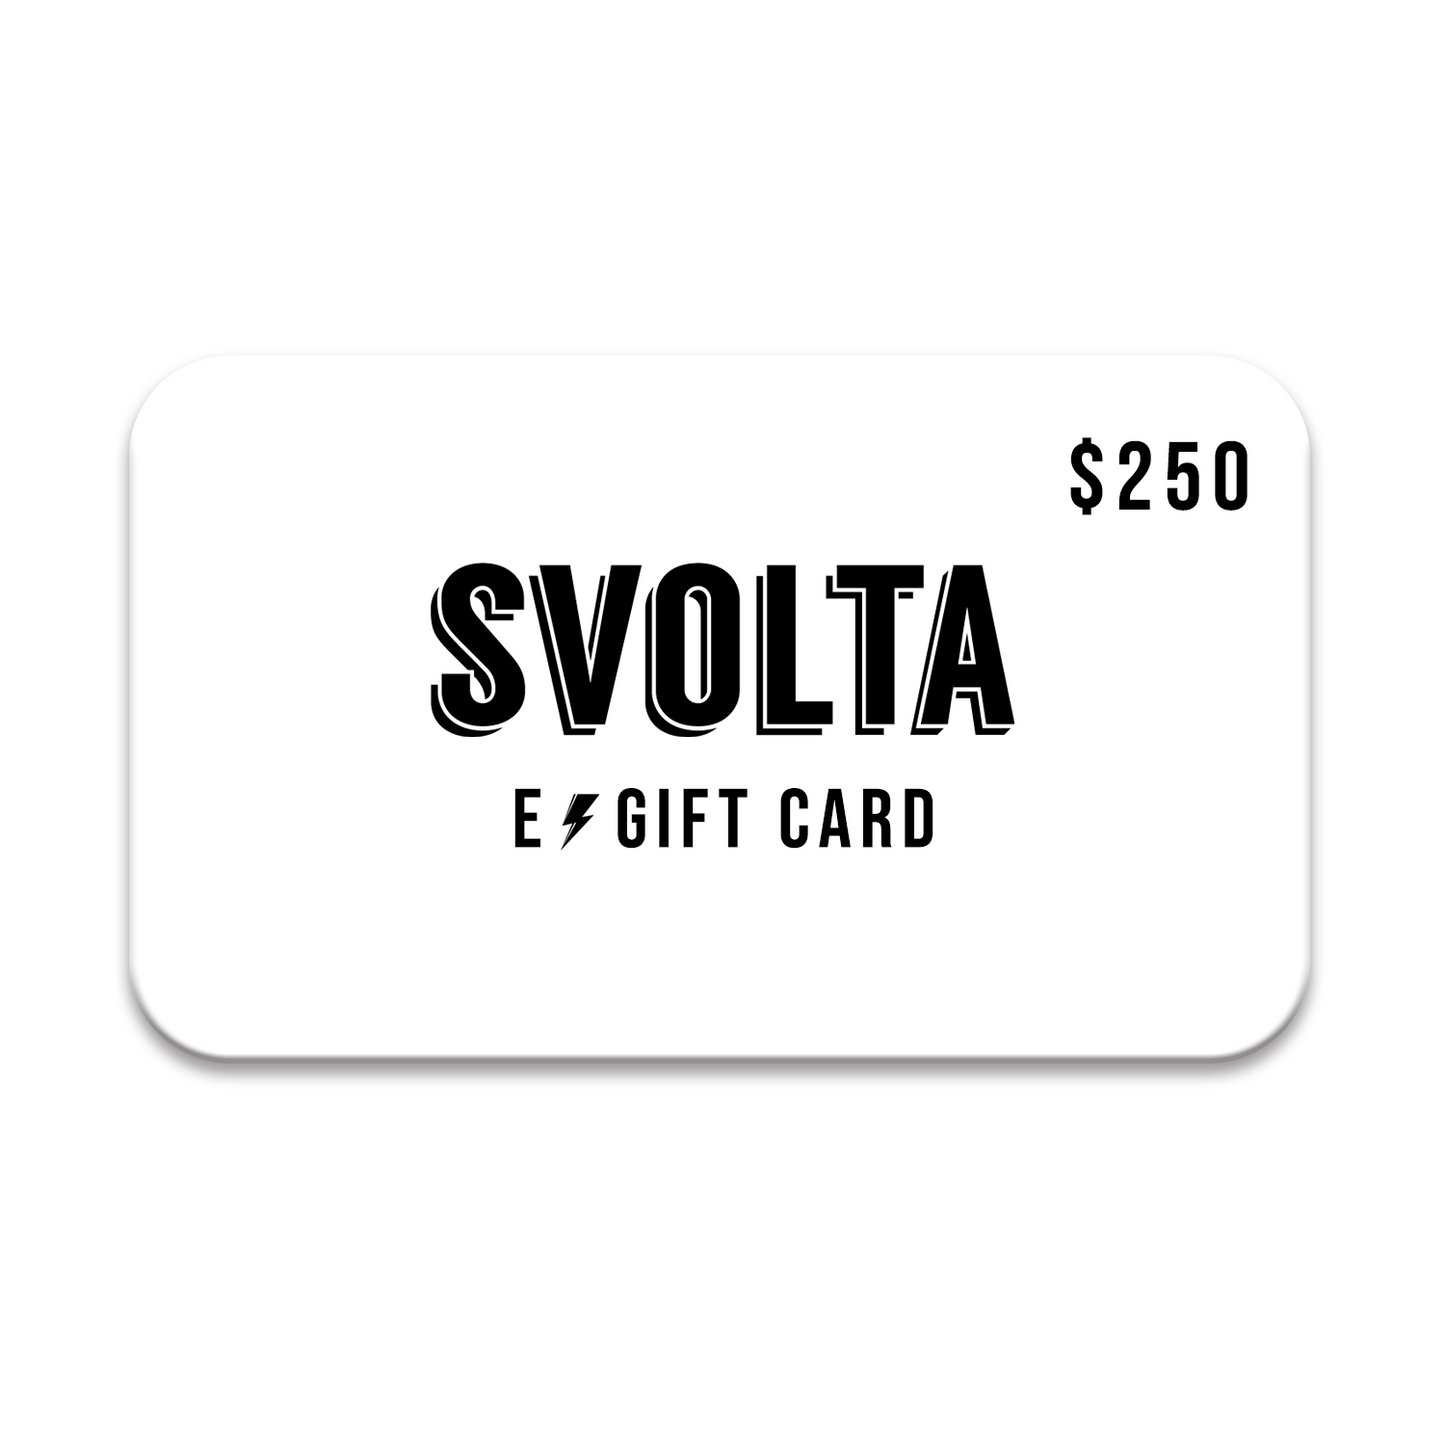 SVOLTA e-Gift Card